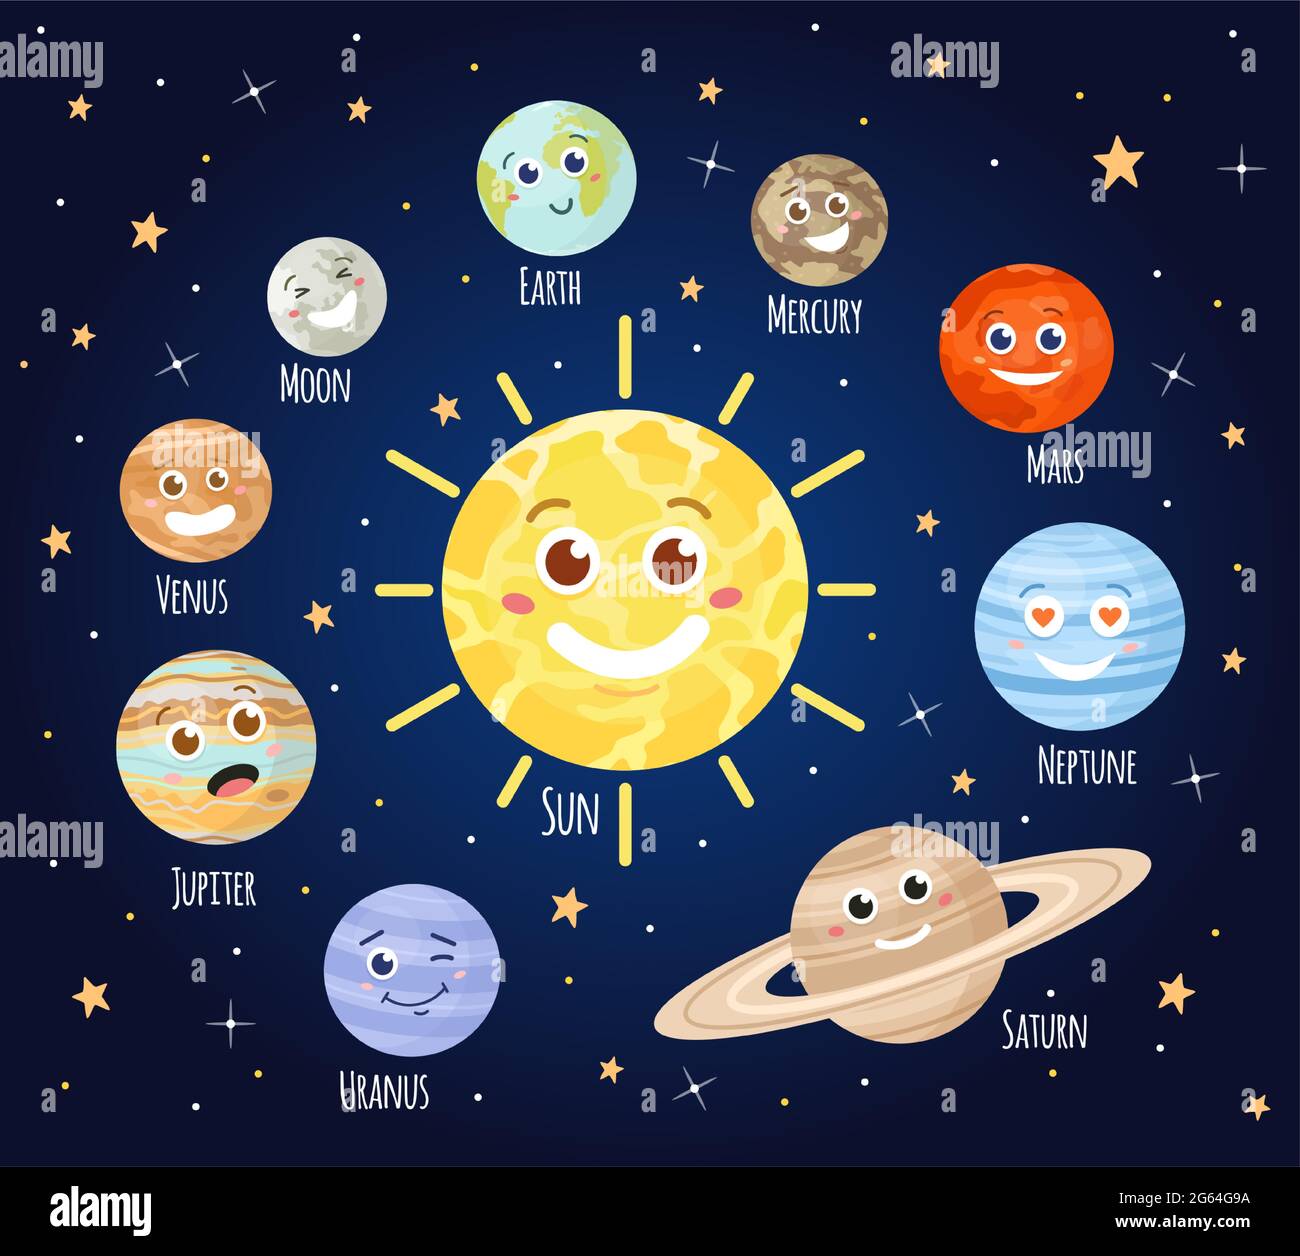 Cartoon-Planeten mit Gesichtern. Sonnensystem Planet Charakter Emoji, Erde, Mond, Sonne und mars im Weltraum. Astronomie für Kinder Vektorset Stock Vektor